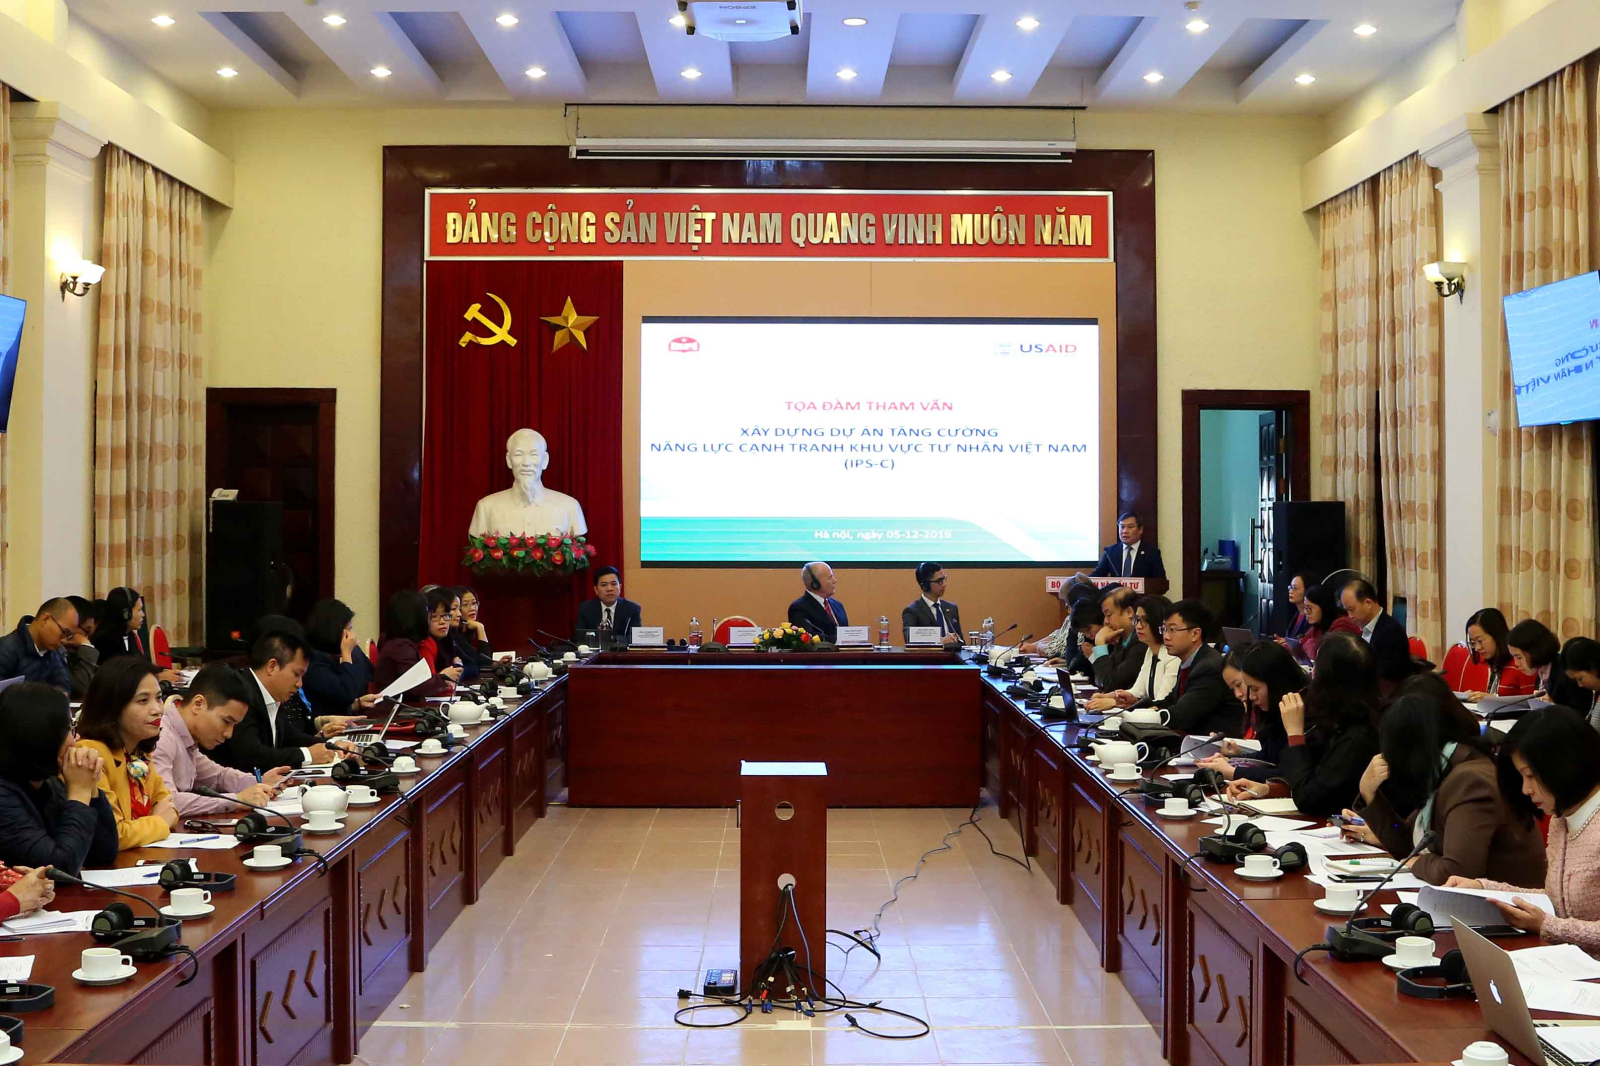 Các ý kiến tại tọa đàm cơ bản đánh giá cao ý nghĩa và nội dung của Dự án Tăng cường năng lực cạnh tranh khu vực tư nhân Việt Nam.